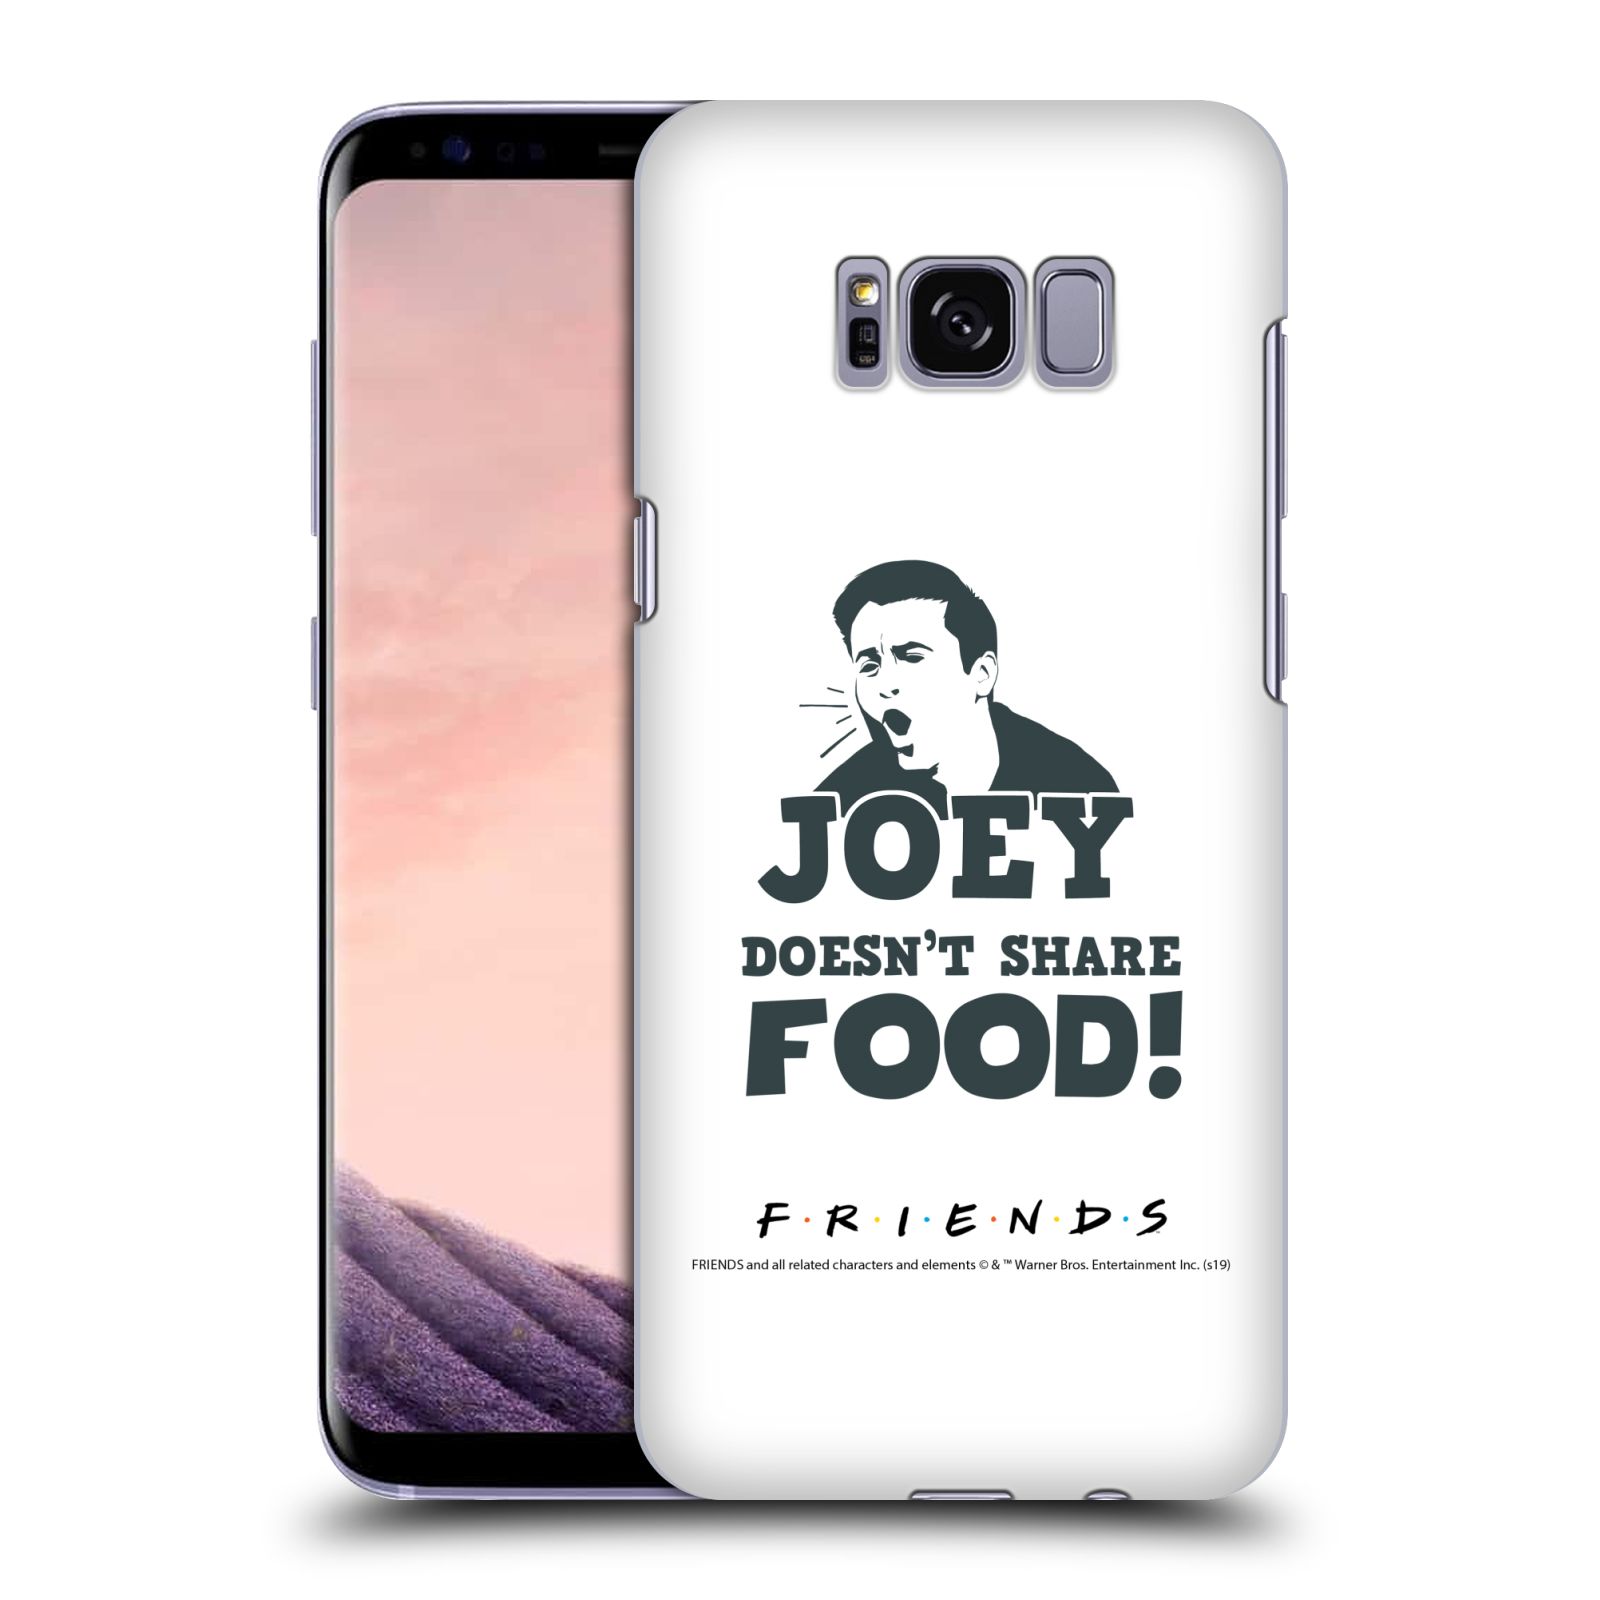 Pouzdro na mobil Samsung Galaxy S8 - HEAD CASE - Seriál Přátelé - Joey se o jídlo nedělí